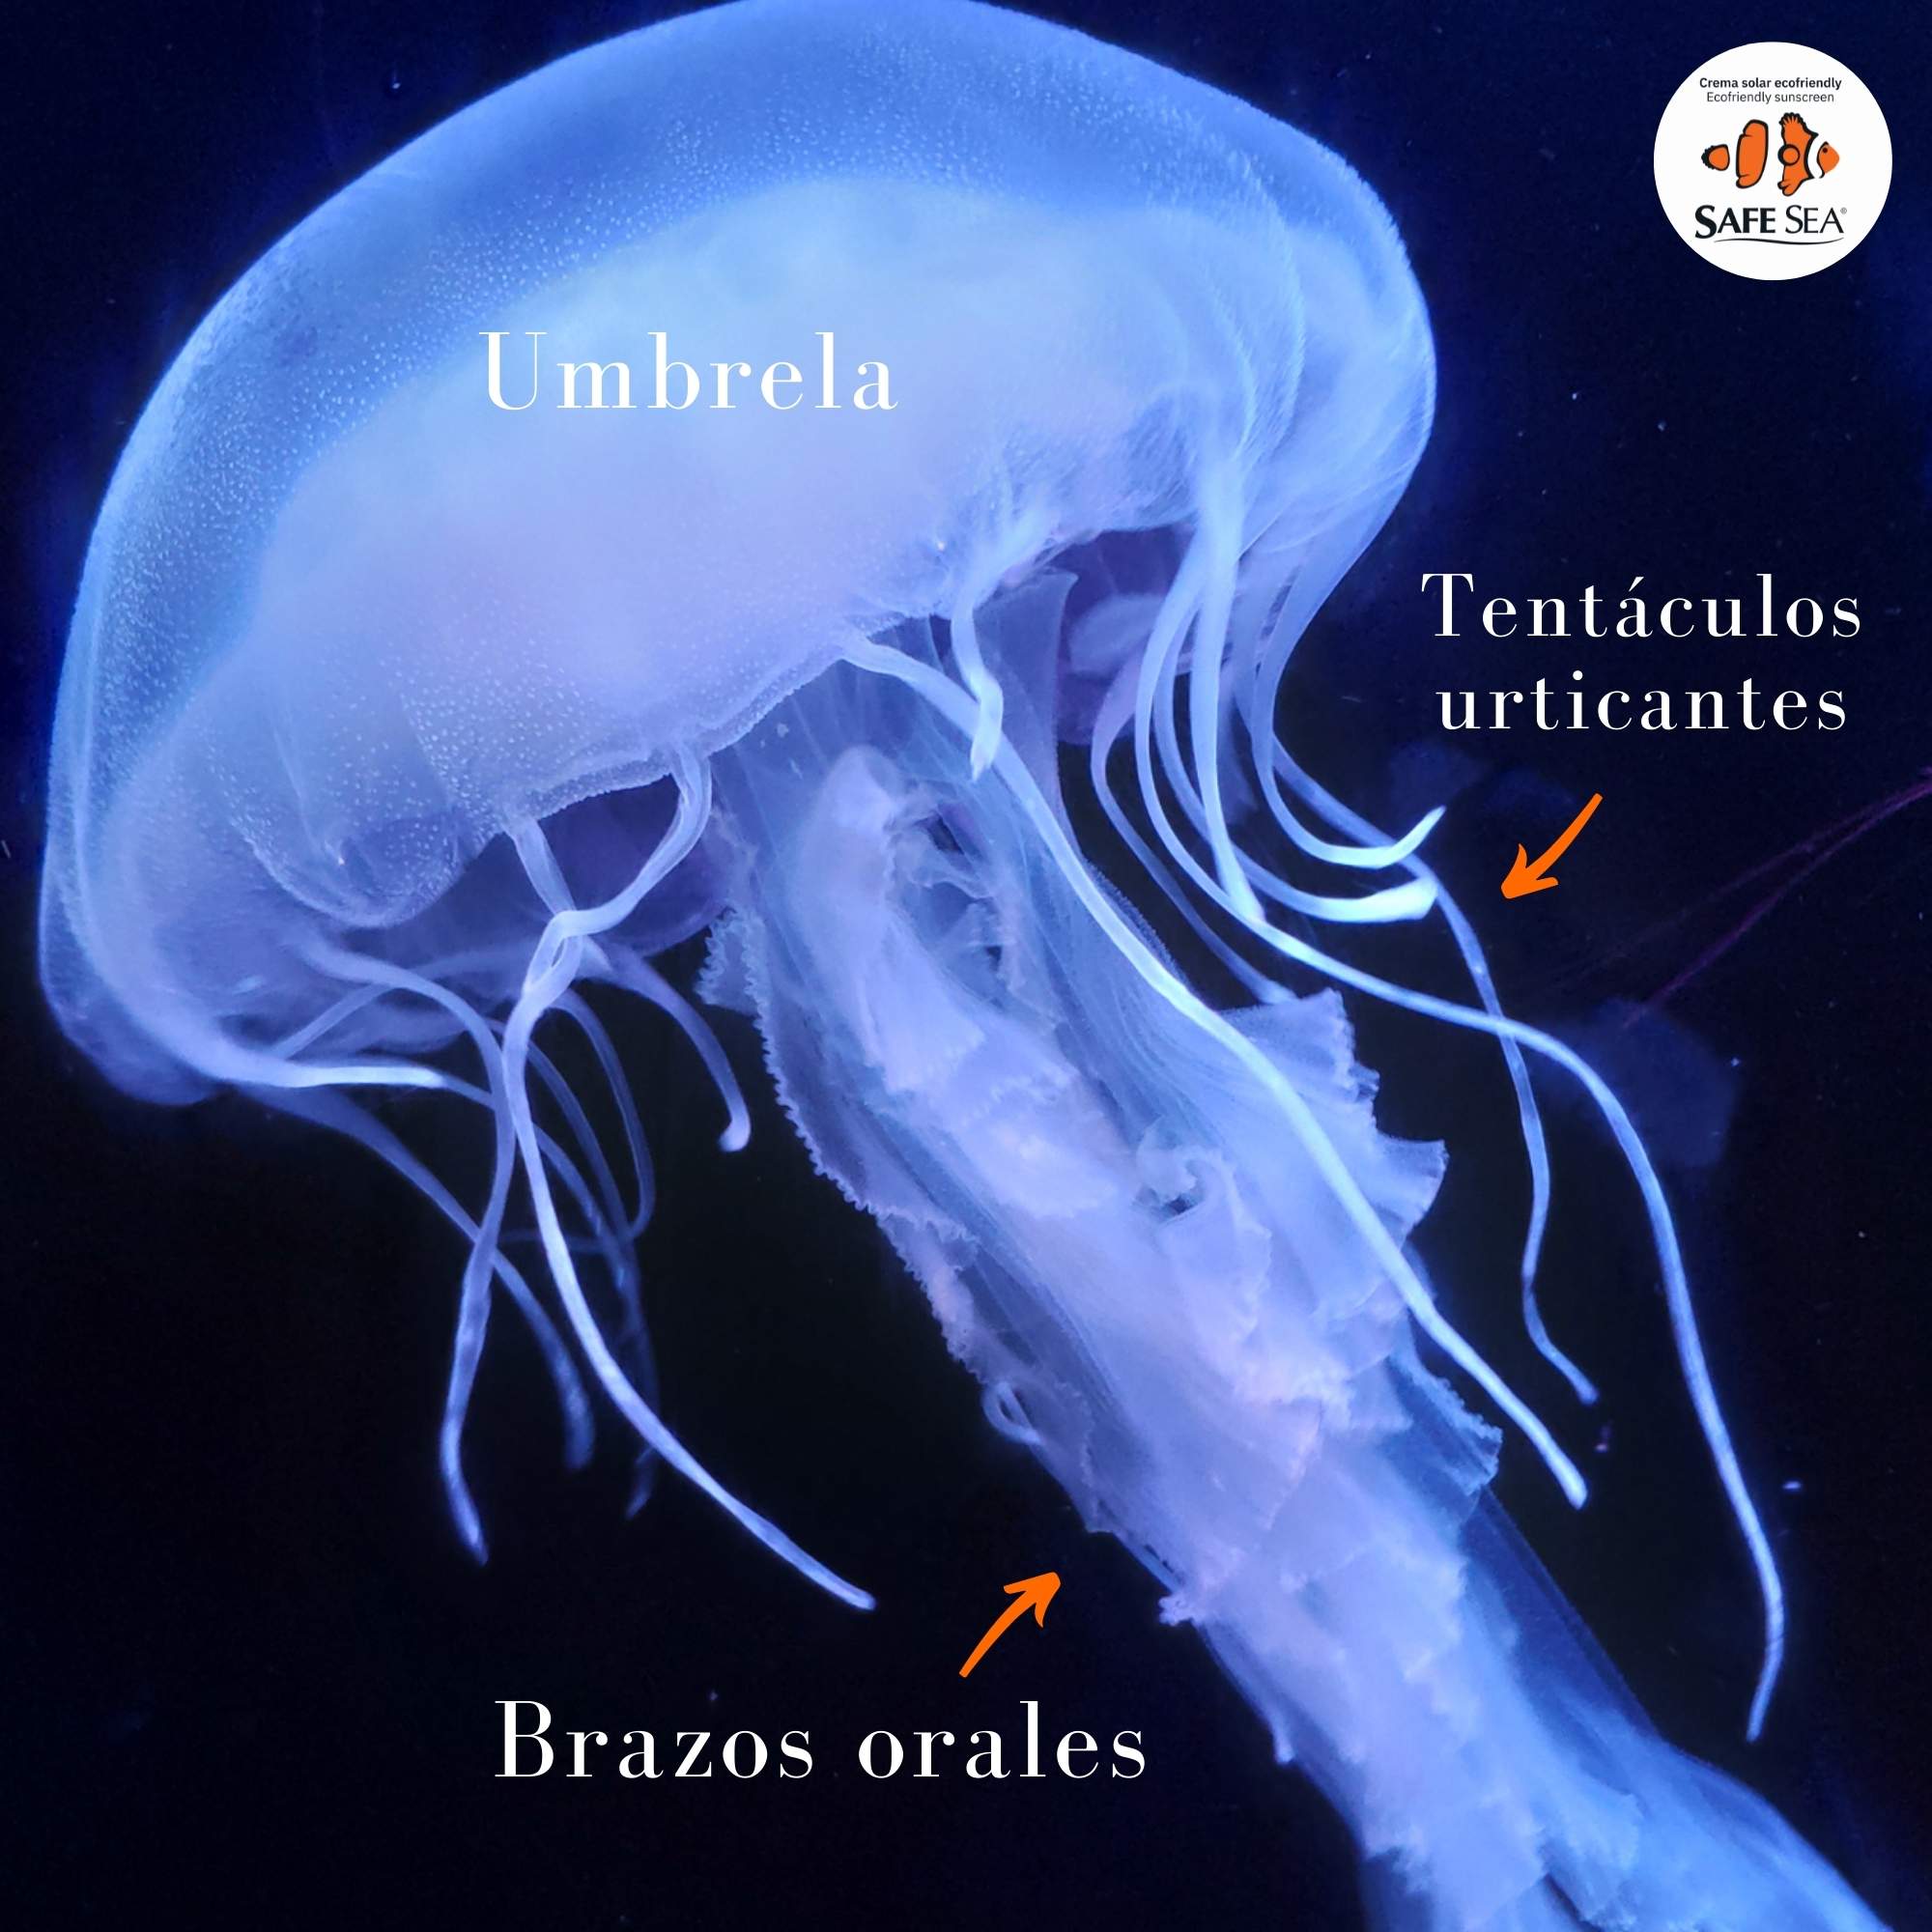 éxtasis Acorazado portátil Partes de la medusa: umbrela, tentáculos y brazos orales